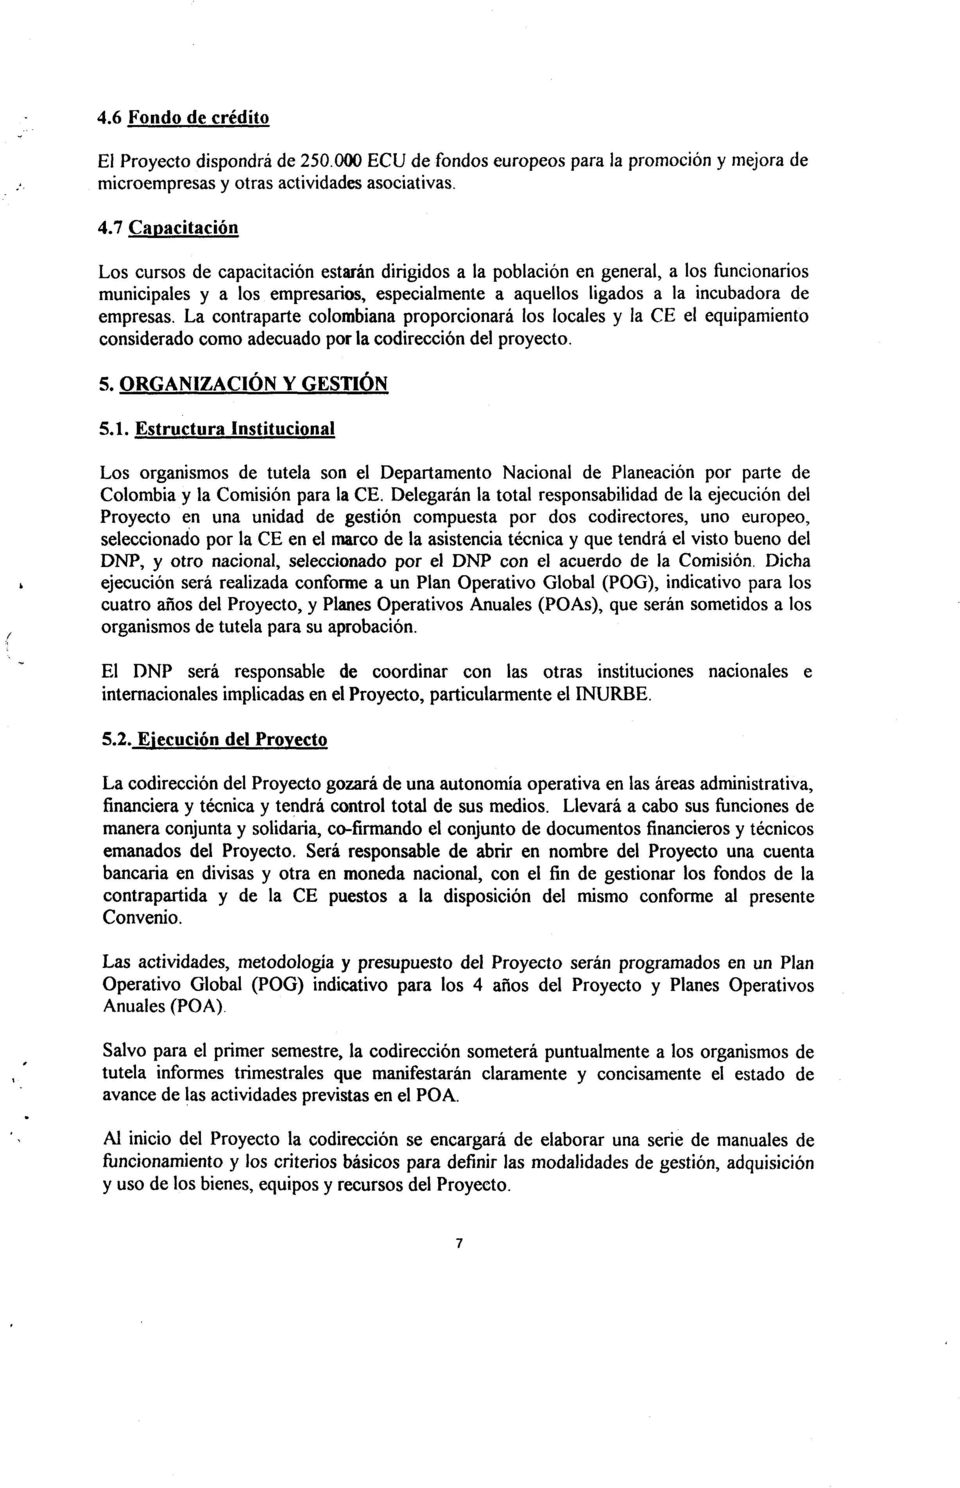 La contraparte colombiana proporcionani los locales y Ia CE el equipamiento considerado como adecuado poria codirecci6n del proyecto. 5. ORGANIZACION Y GESTION 5.1. Estructura Institucional I.